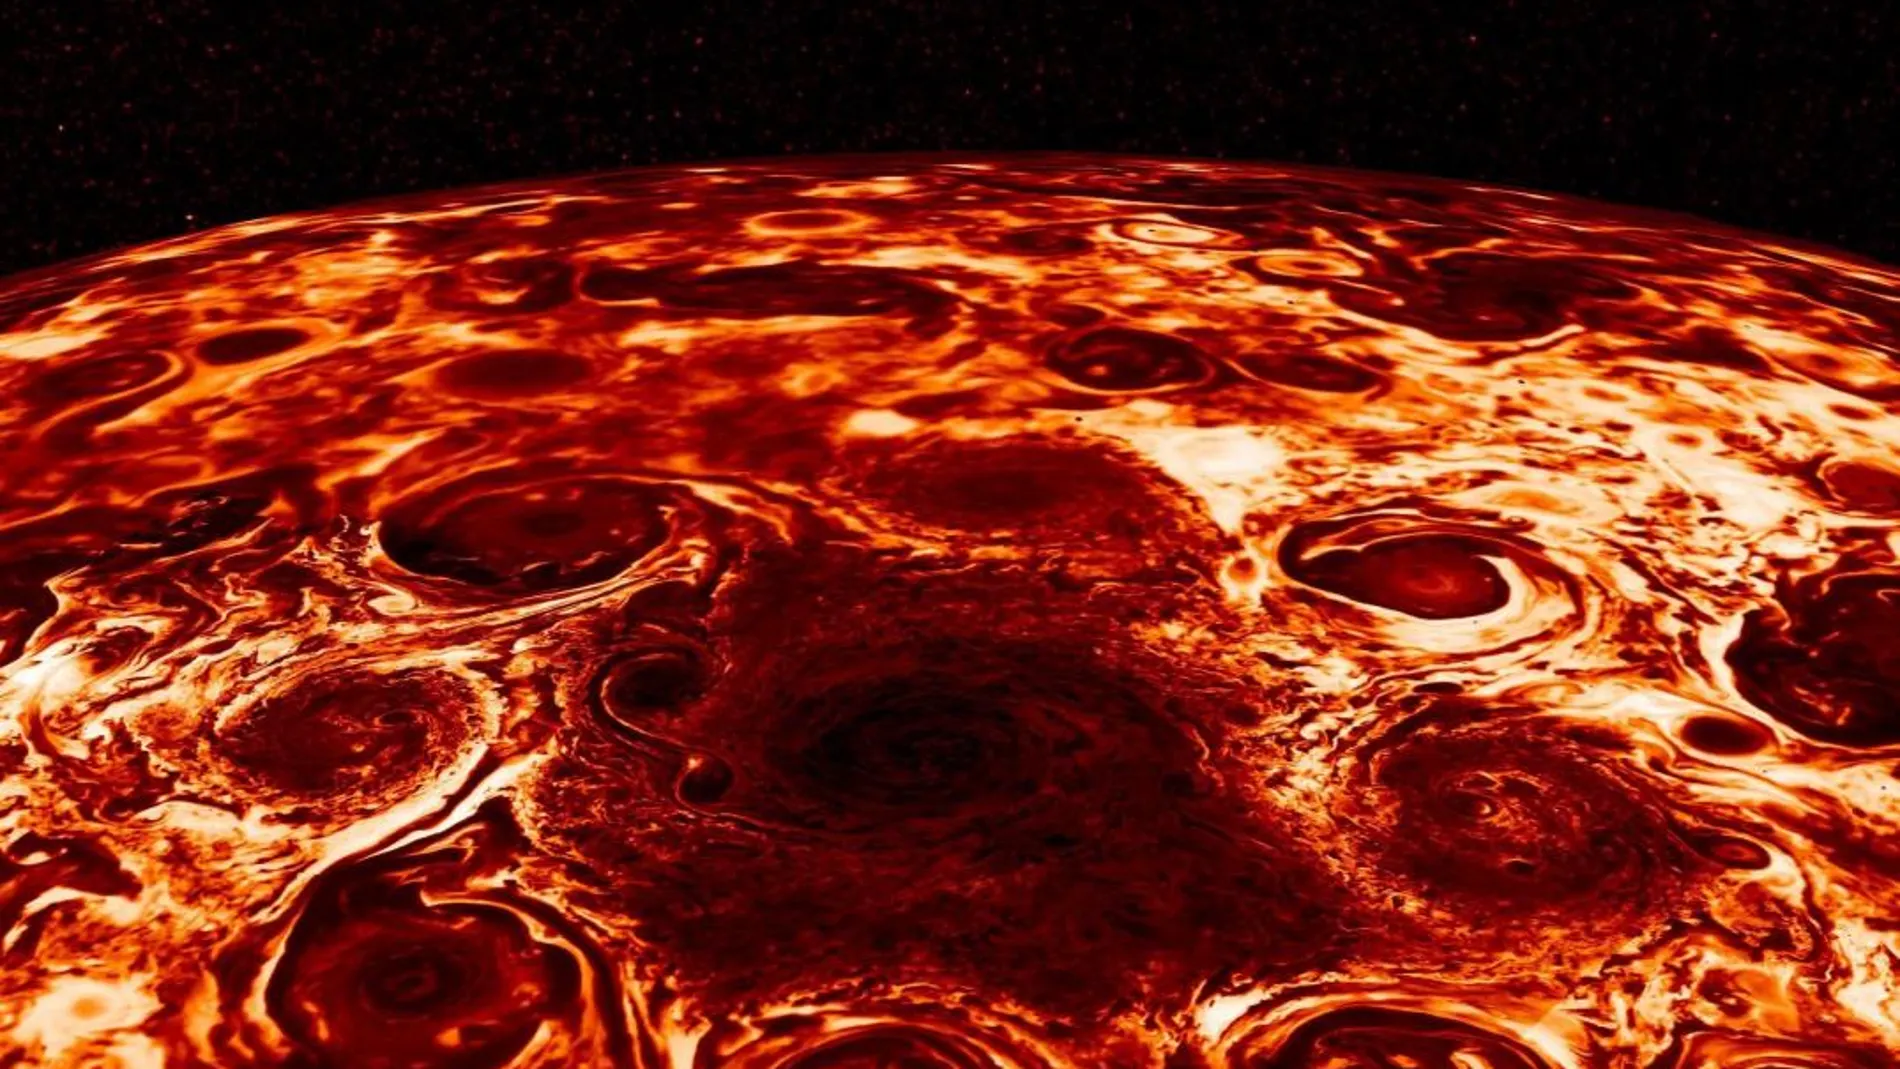 Fotografía facilitada por la NASA, de los ciclones gigantes que sus científicos responsables de la misión Juno han encontrado en el polo norte de Júpiter, datos que revelan irregularidades inesperadas, regiones con un campo magnético más intenso y diferencias apreciables entre el polo norte y el sur